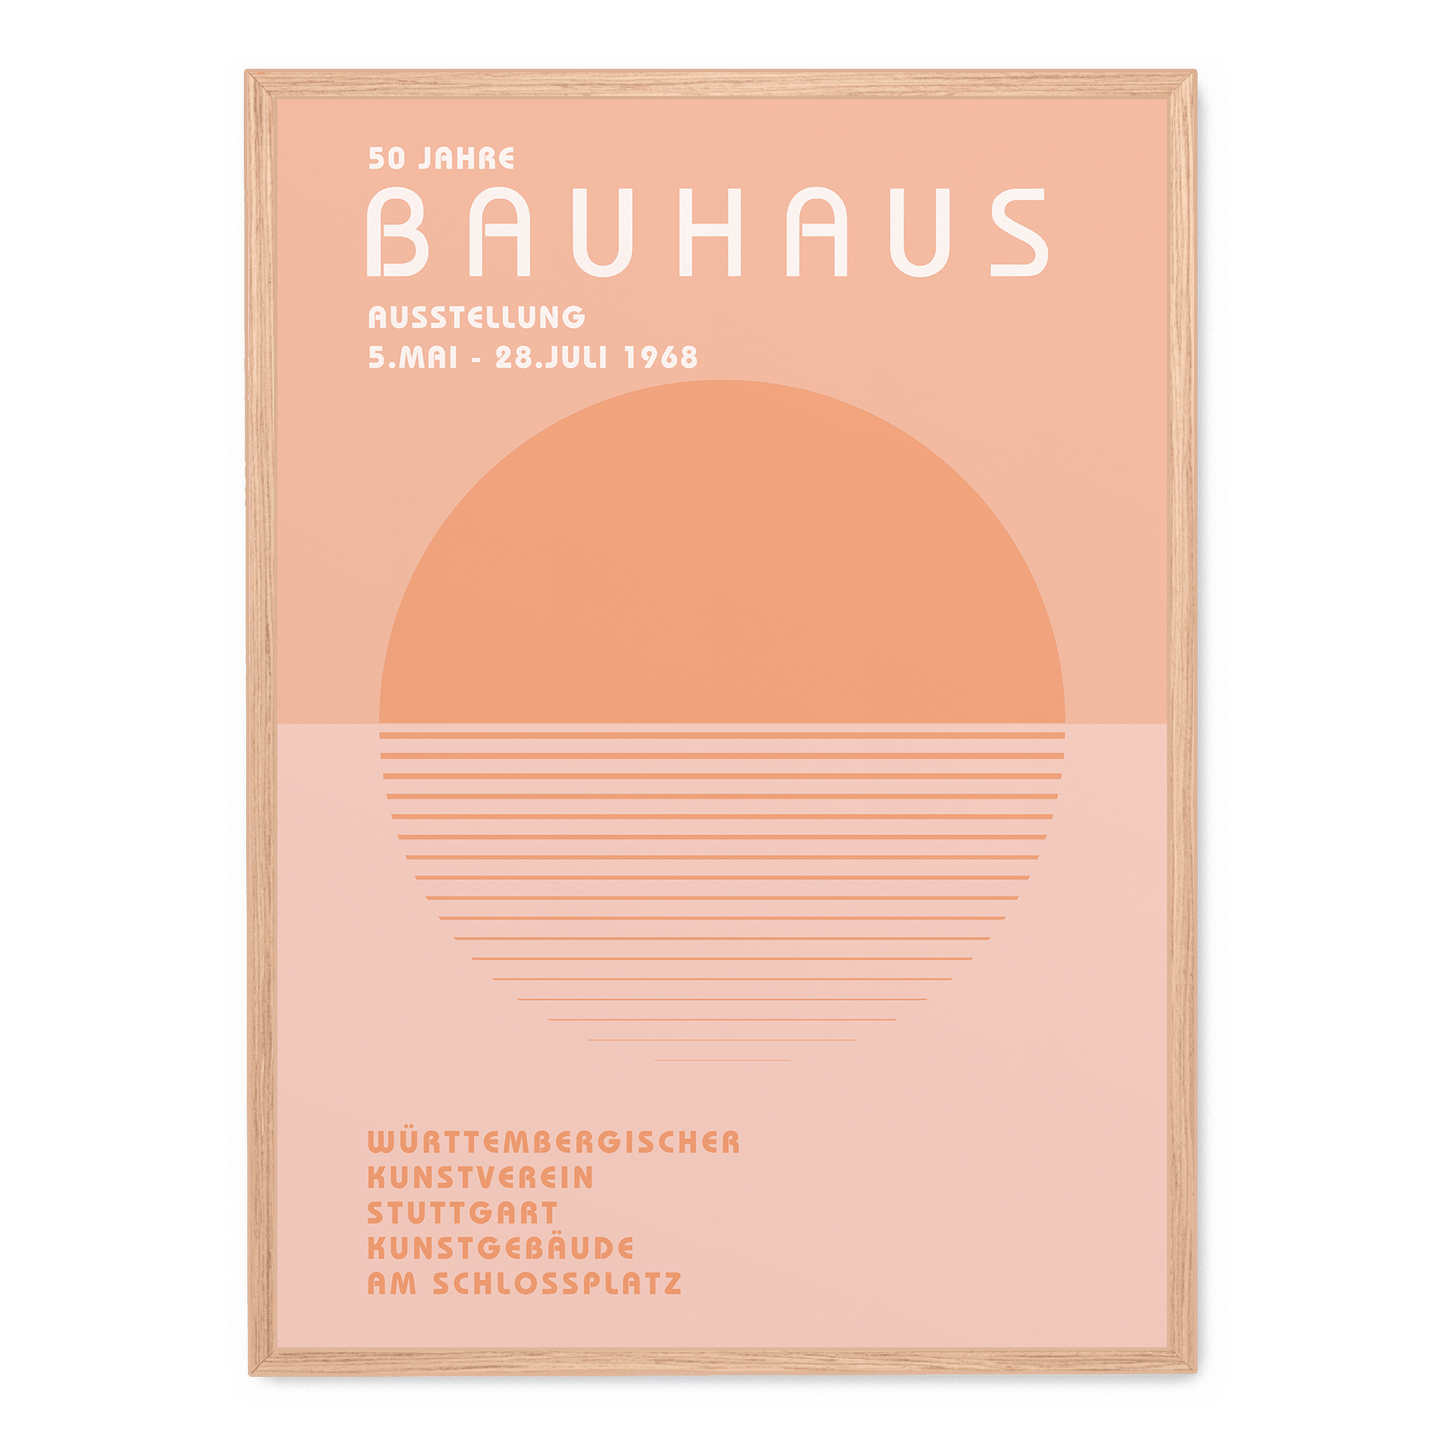 Bauhaus Württembergischer